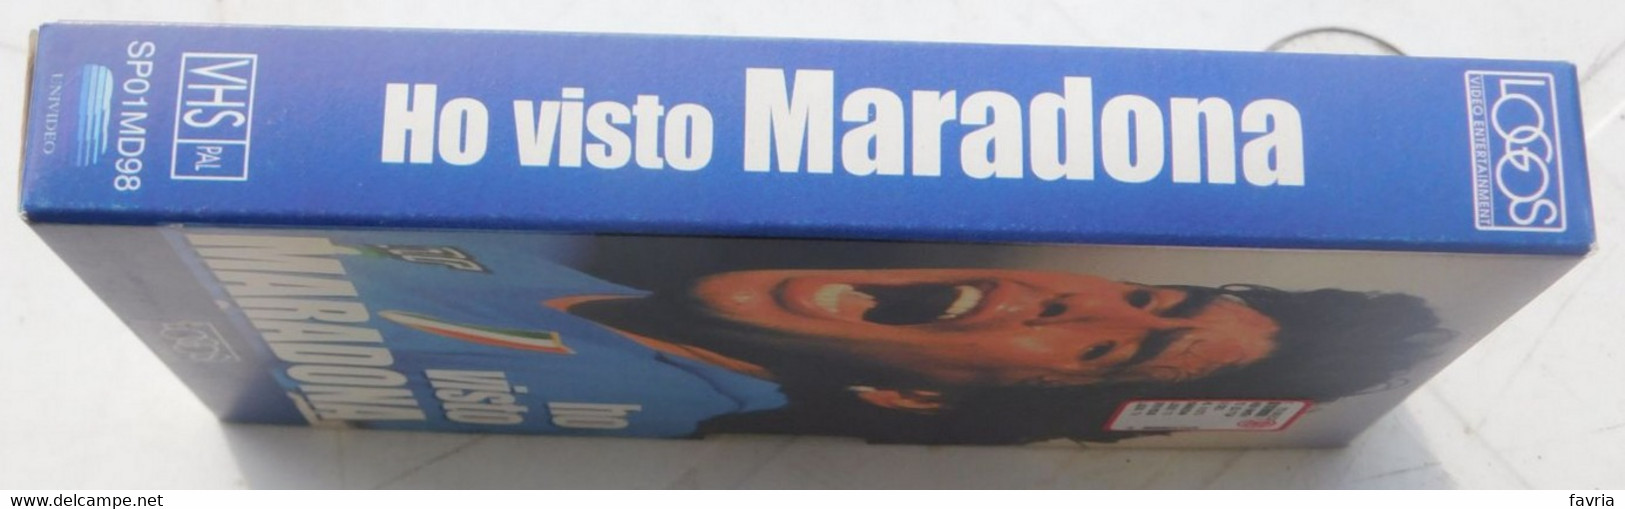 VHS - Ho Visto  MARADONA (Napoli) # Logos, 1998 # 65 Minuti - Immagini Pubbliche E Private Inedite - Sports